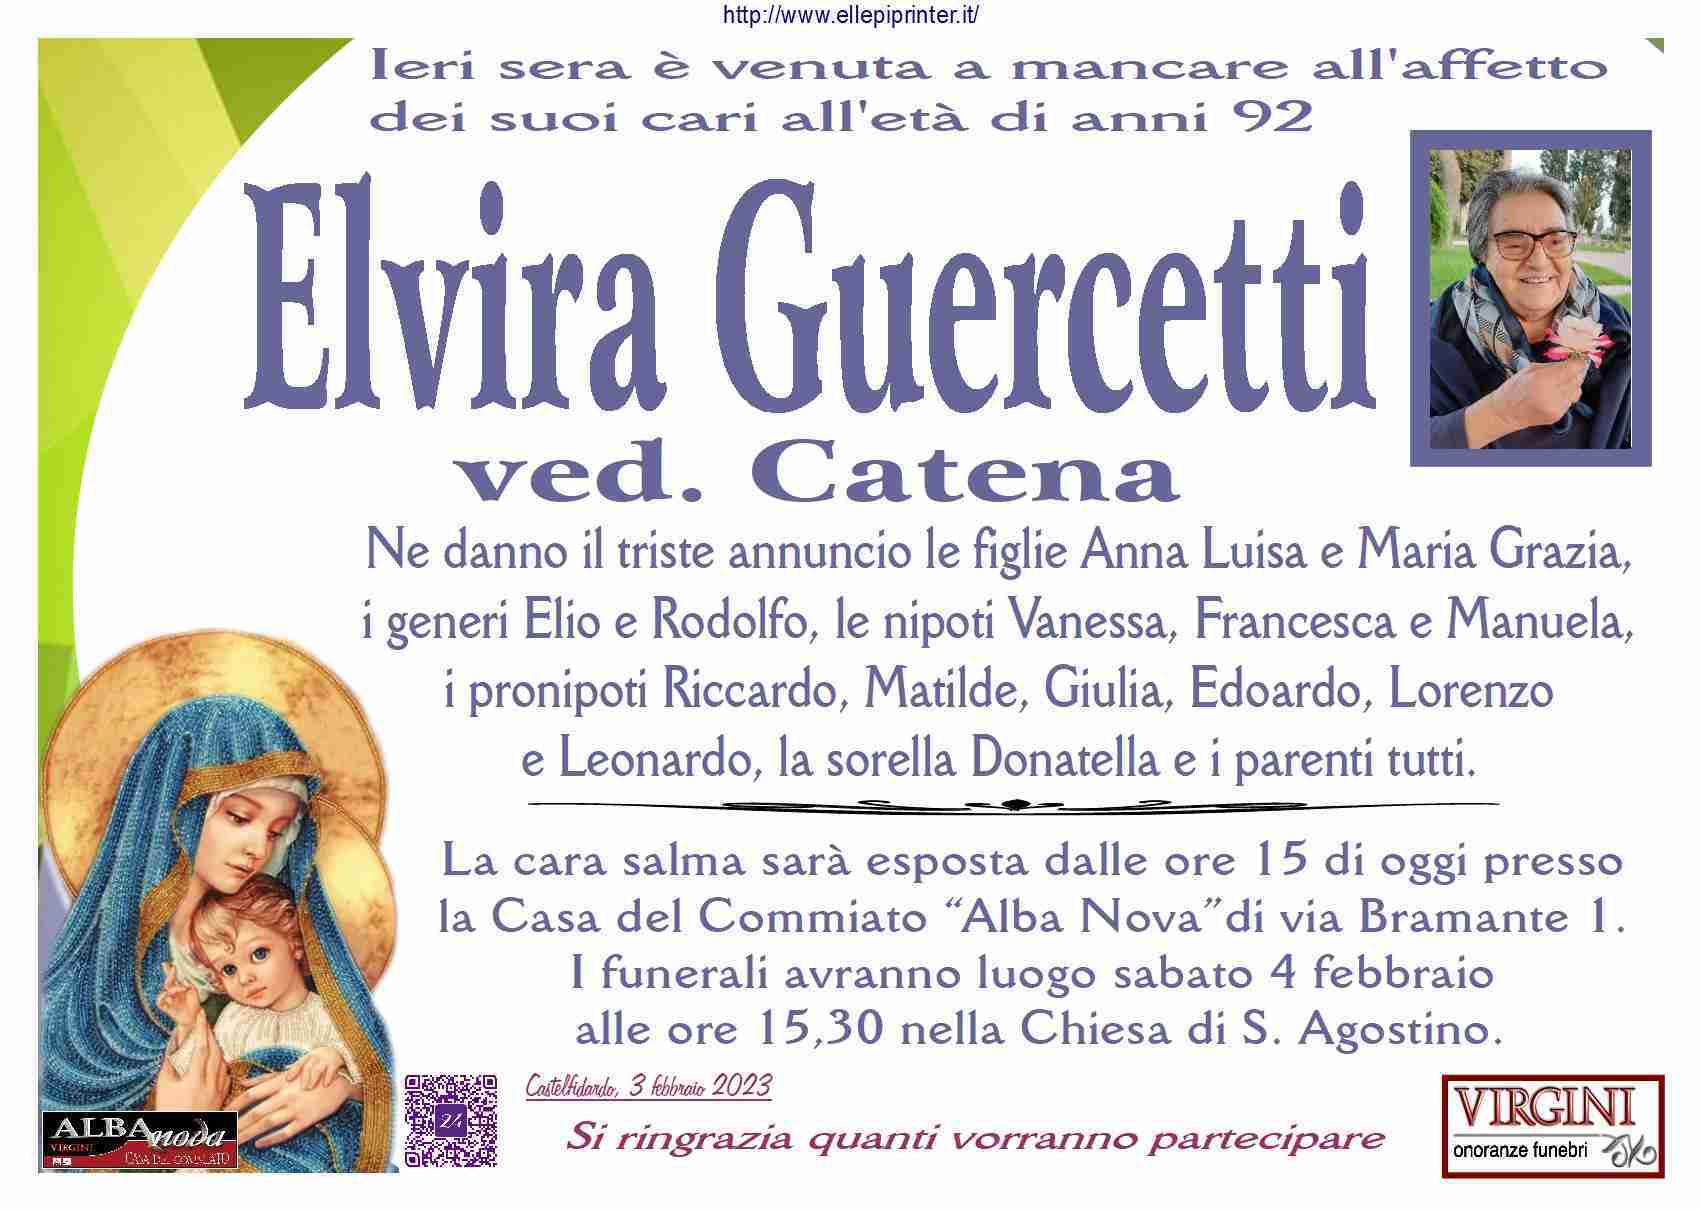 Elvira Guercetti